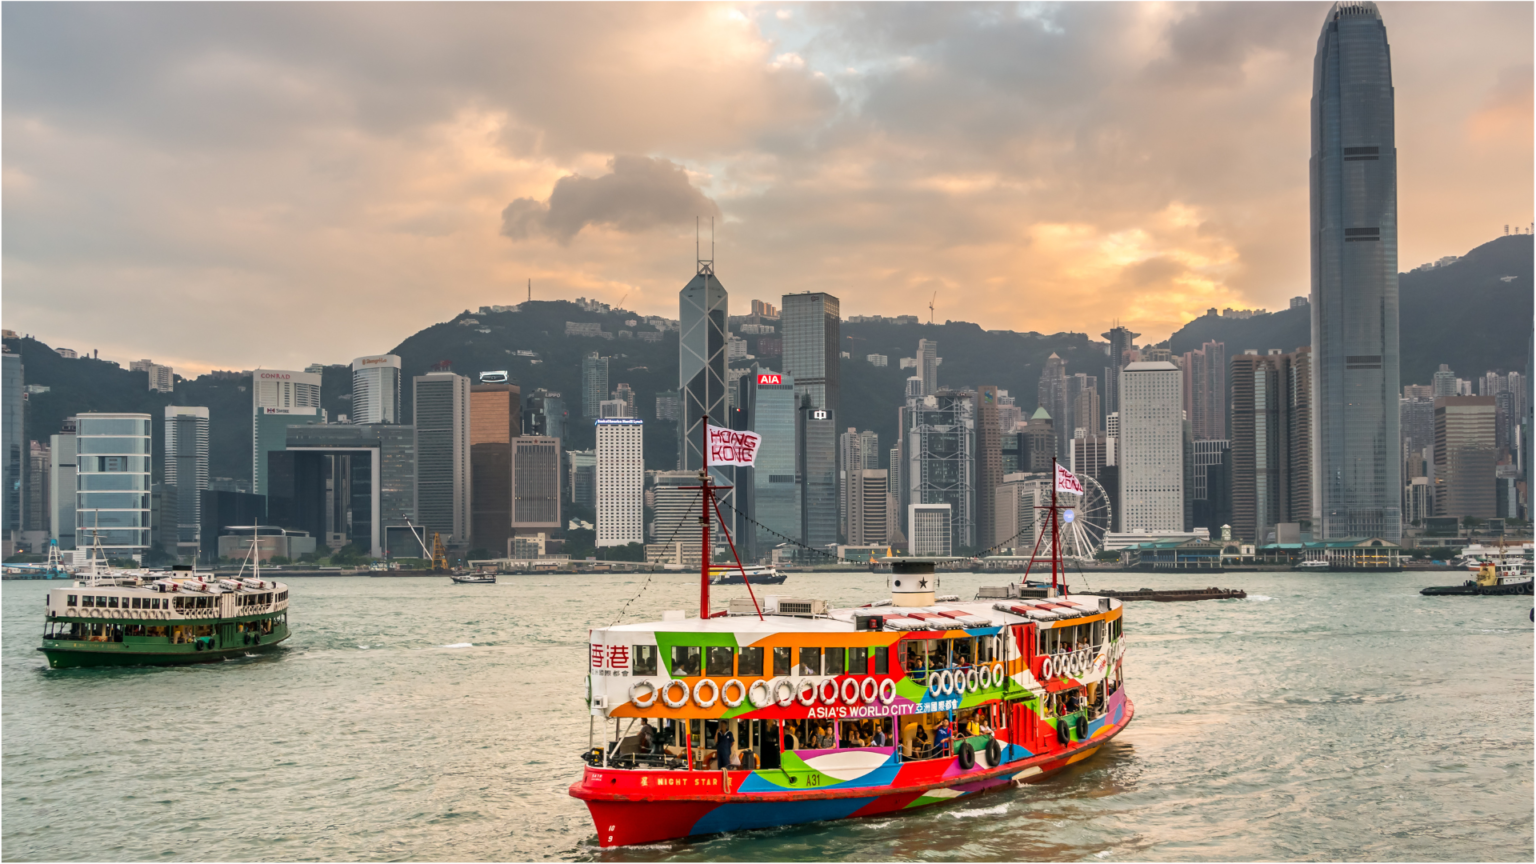 E-ferry trials Hong Kong